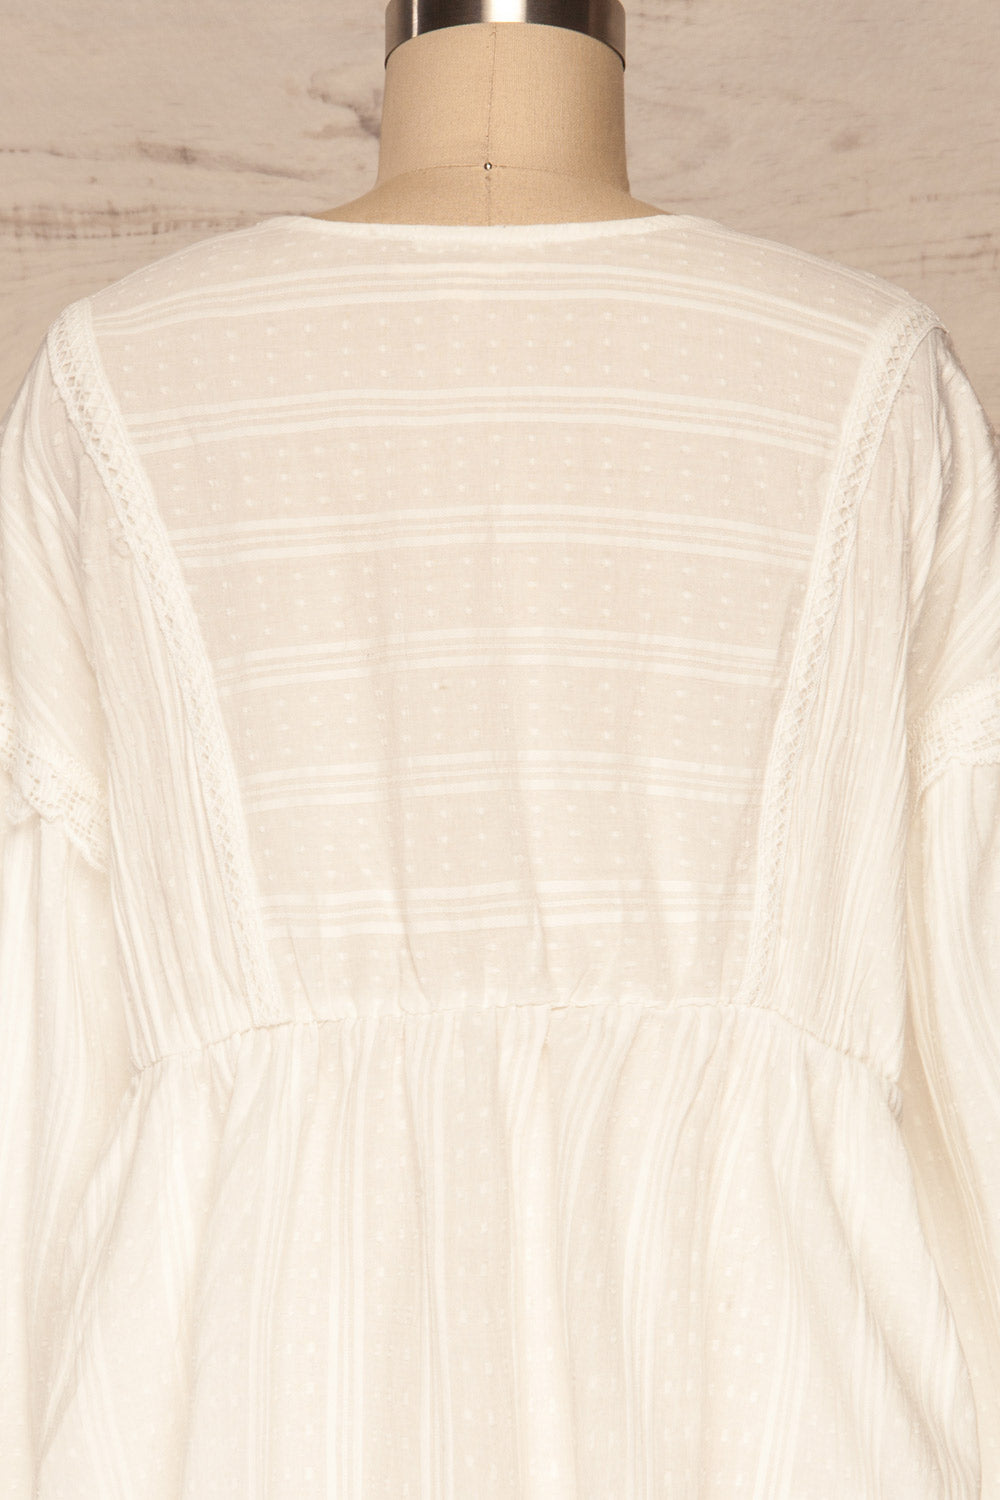 Hillerod White Blouse with Lace Details back close up | La Petite Garçonne